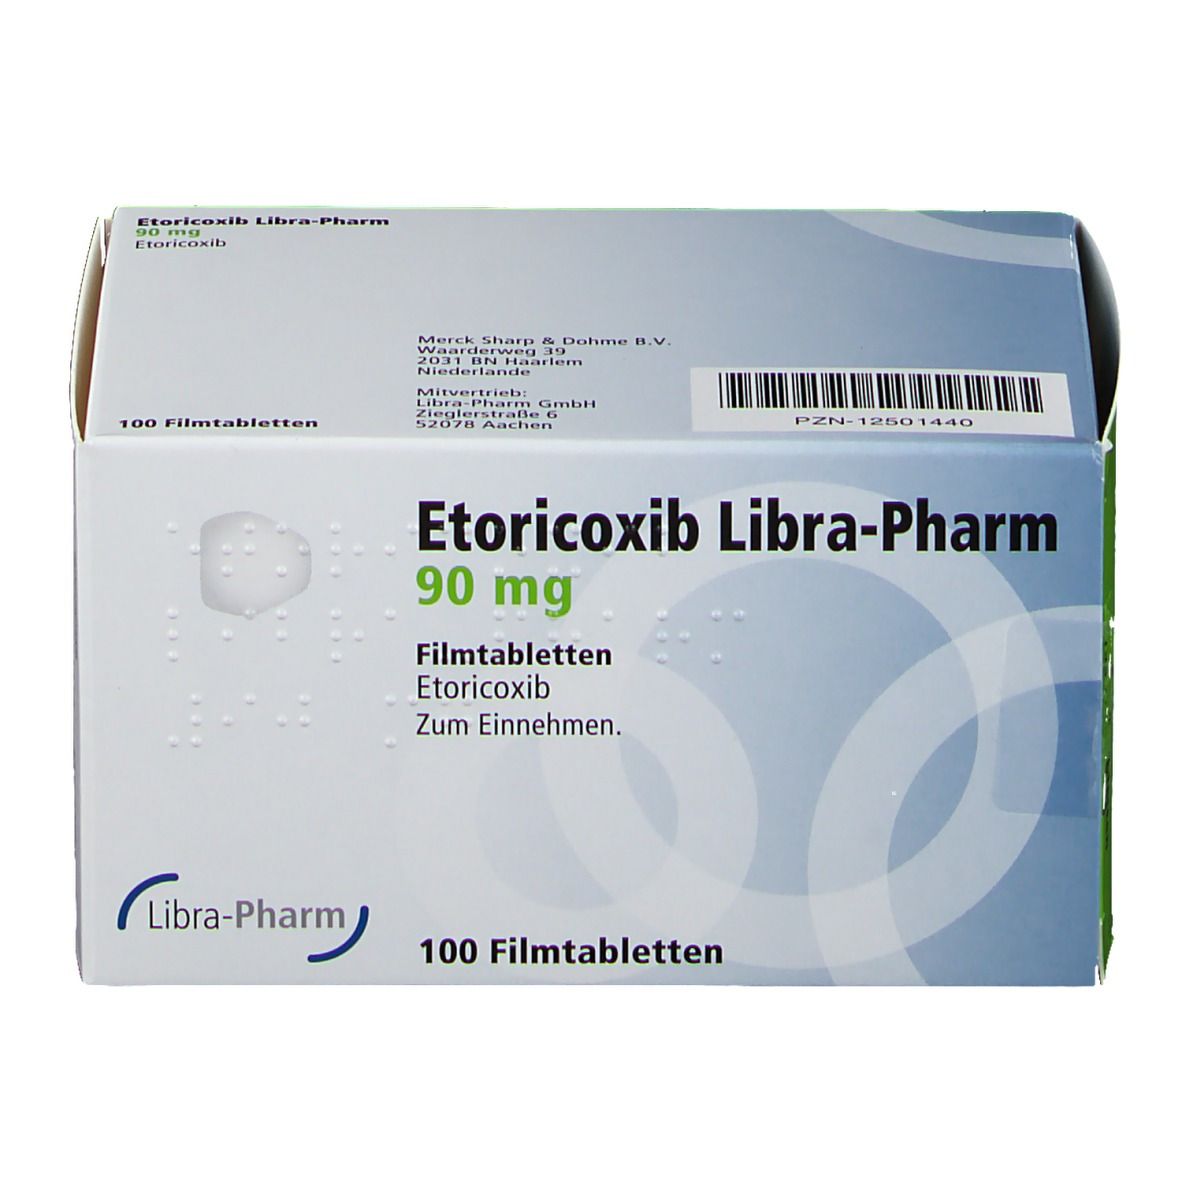 Etoricoxib Libra-Pharm 90 mg